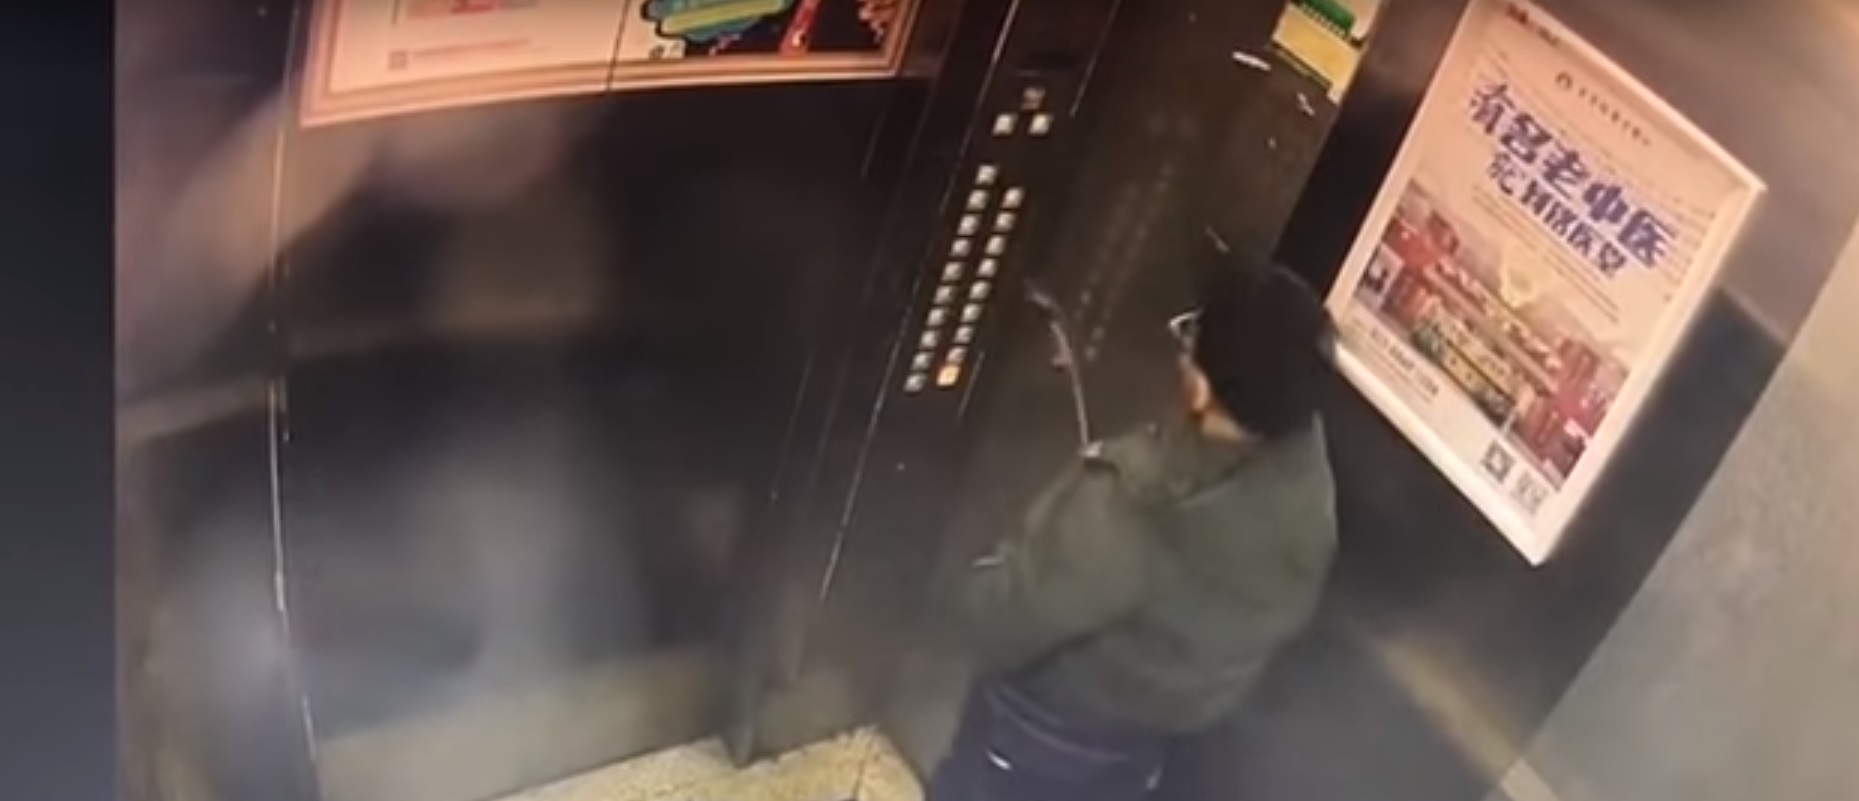 Egy kínai gyerek belevizelt egy liftbe, ami leállt, ő pedig beragadt, az állami média meg propagandát csinált belőle